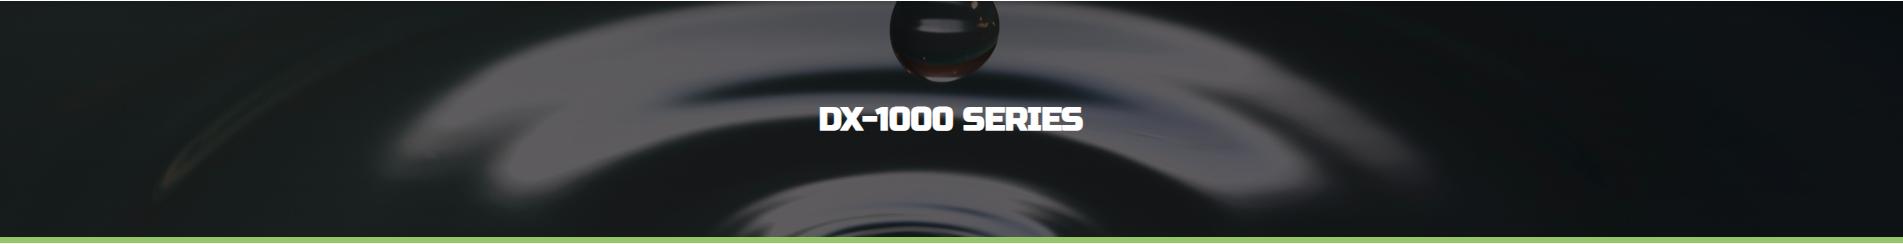 DX 1000 series banner